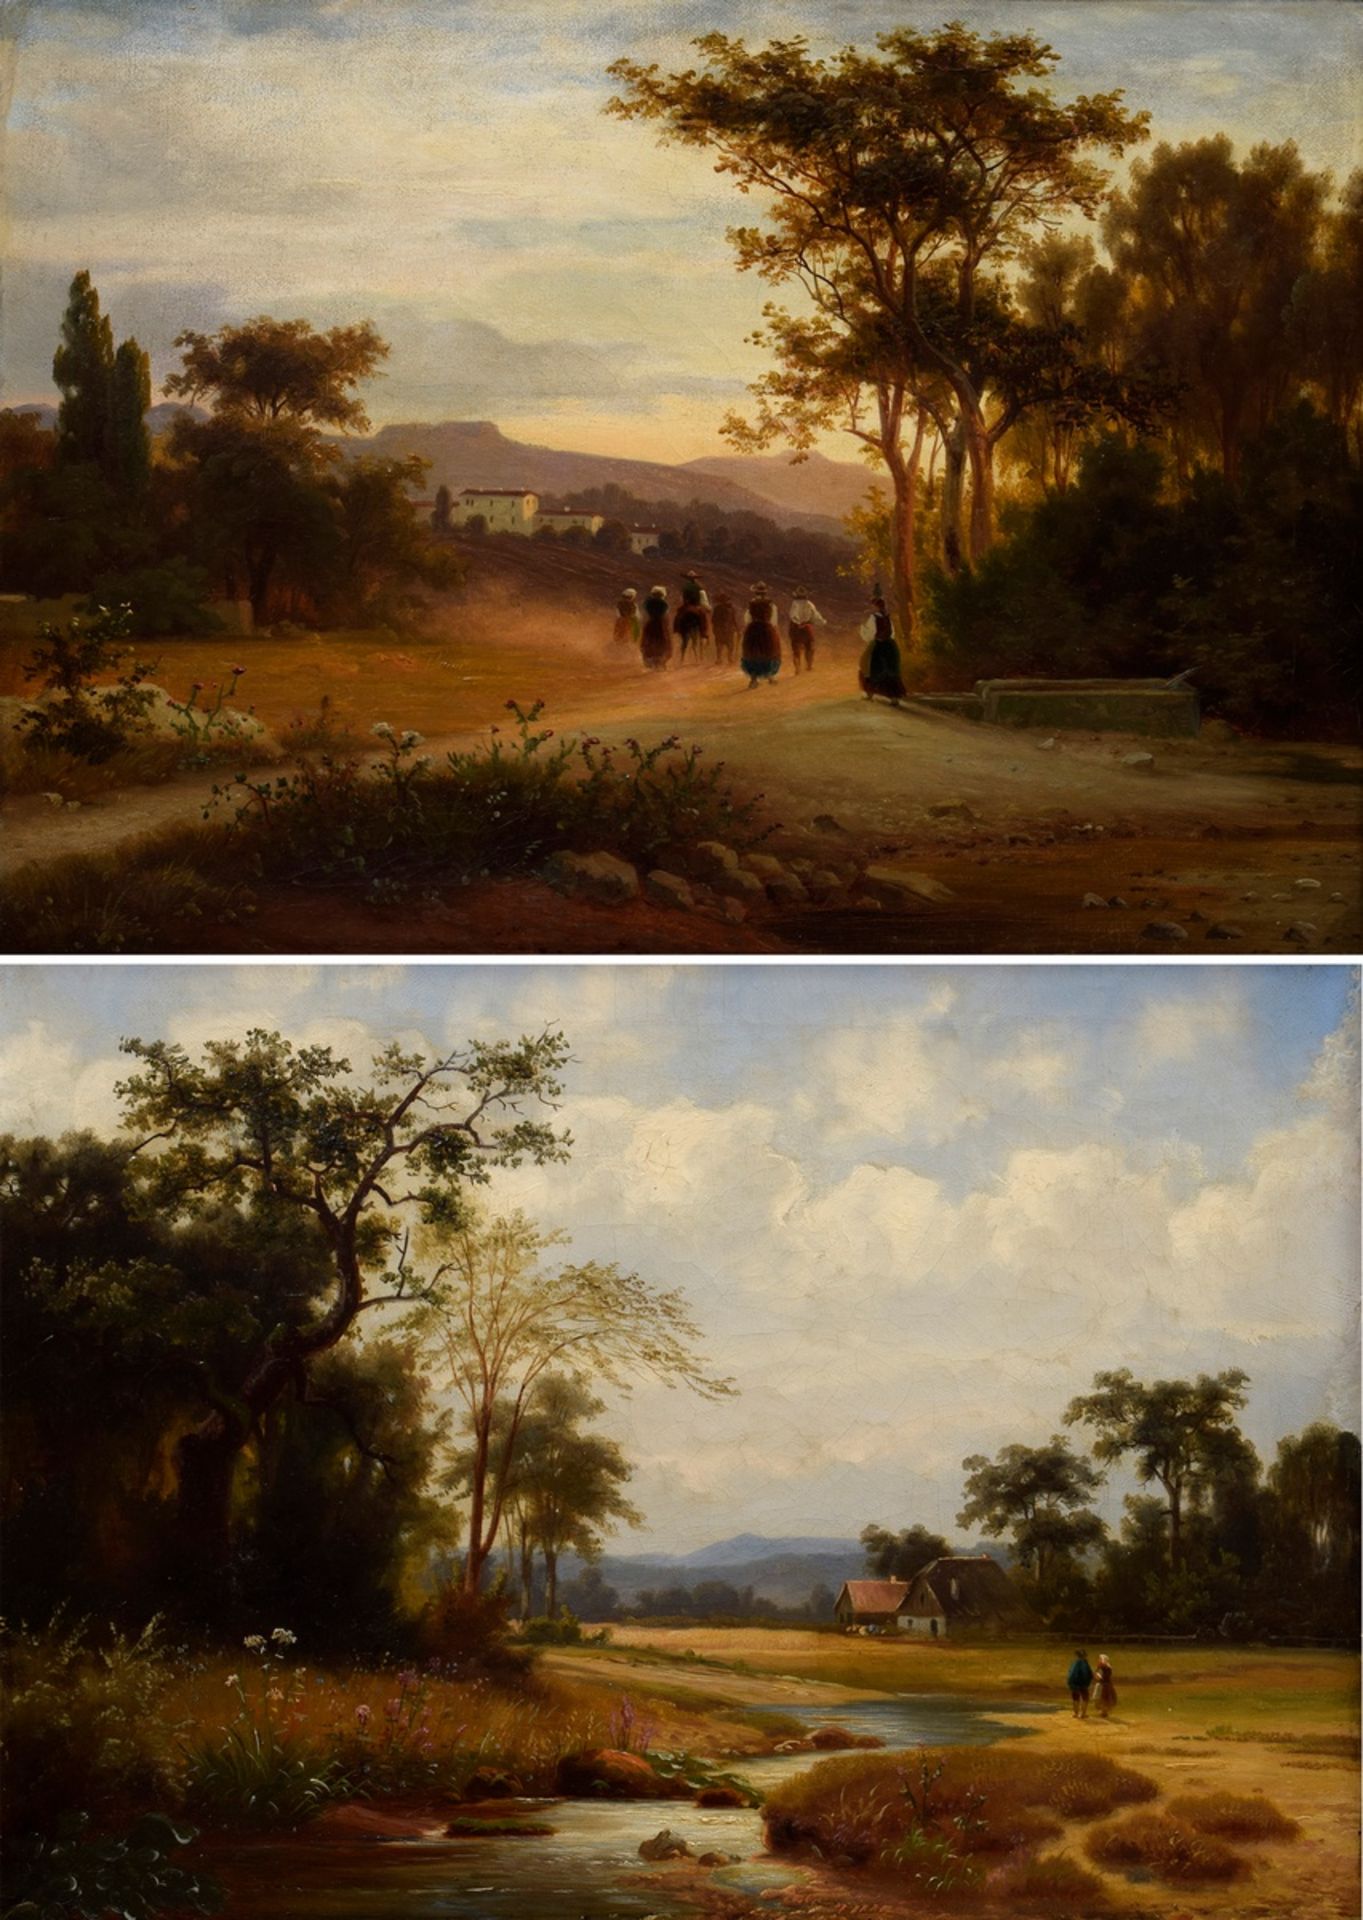 2 Landschaftsansichten eines unbekannten Künstlers des 19.Jh. "Heimkehr vom Feld" und "Weg am Fluss